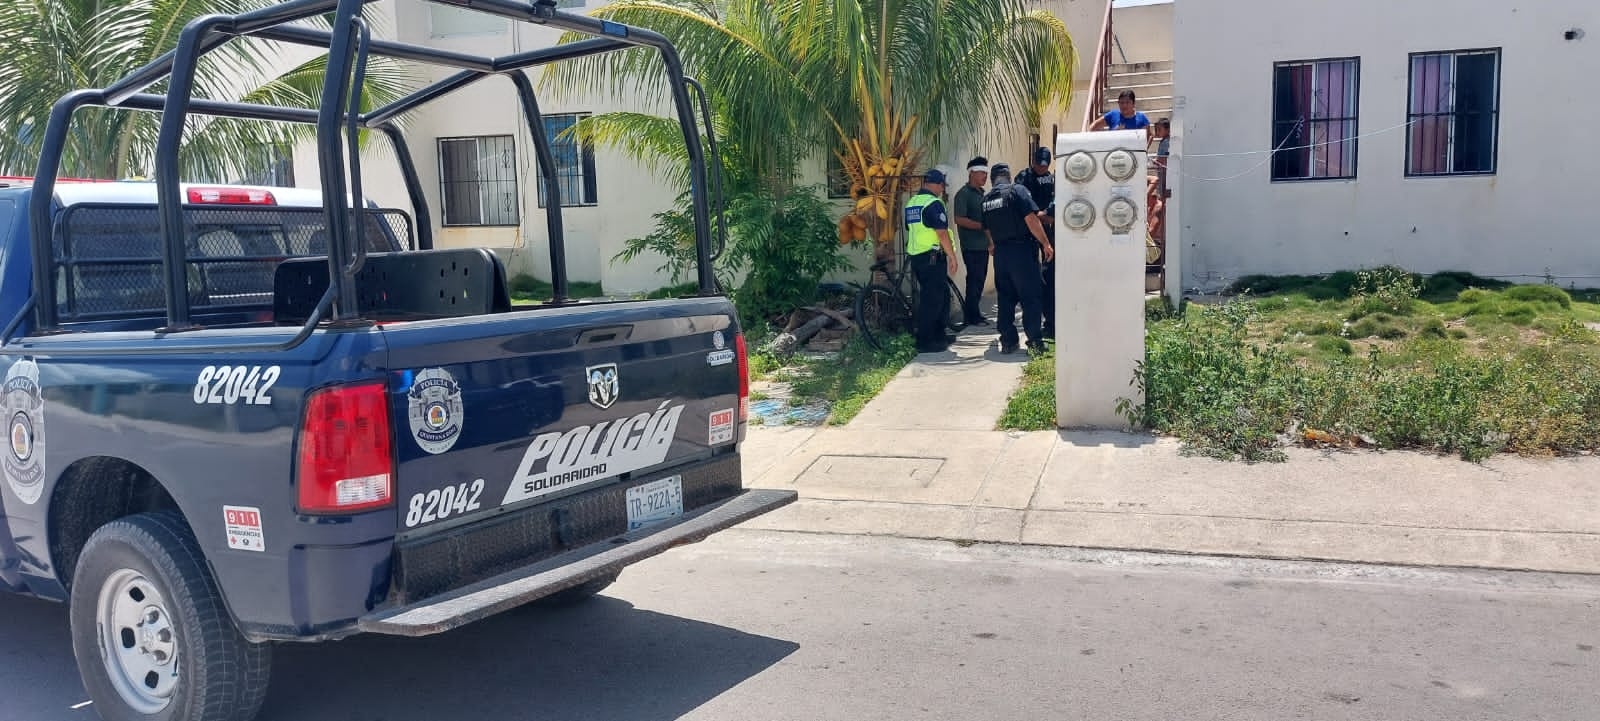 Por golpear al 'sancho', hombre termina detenido en Playa del Carmen